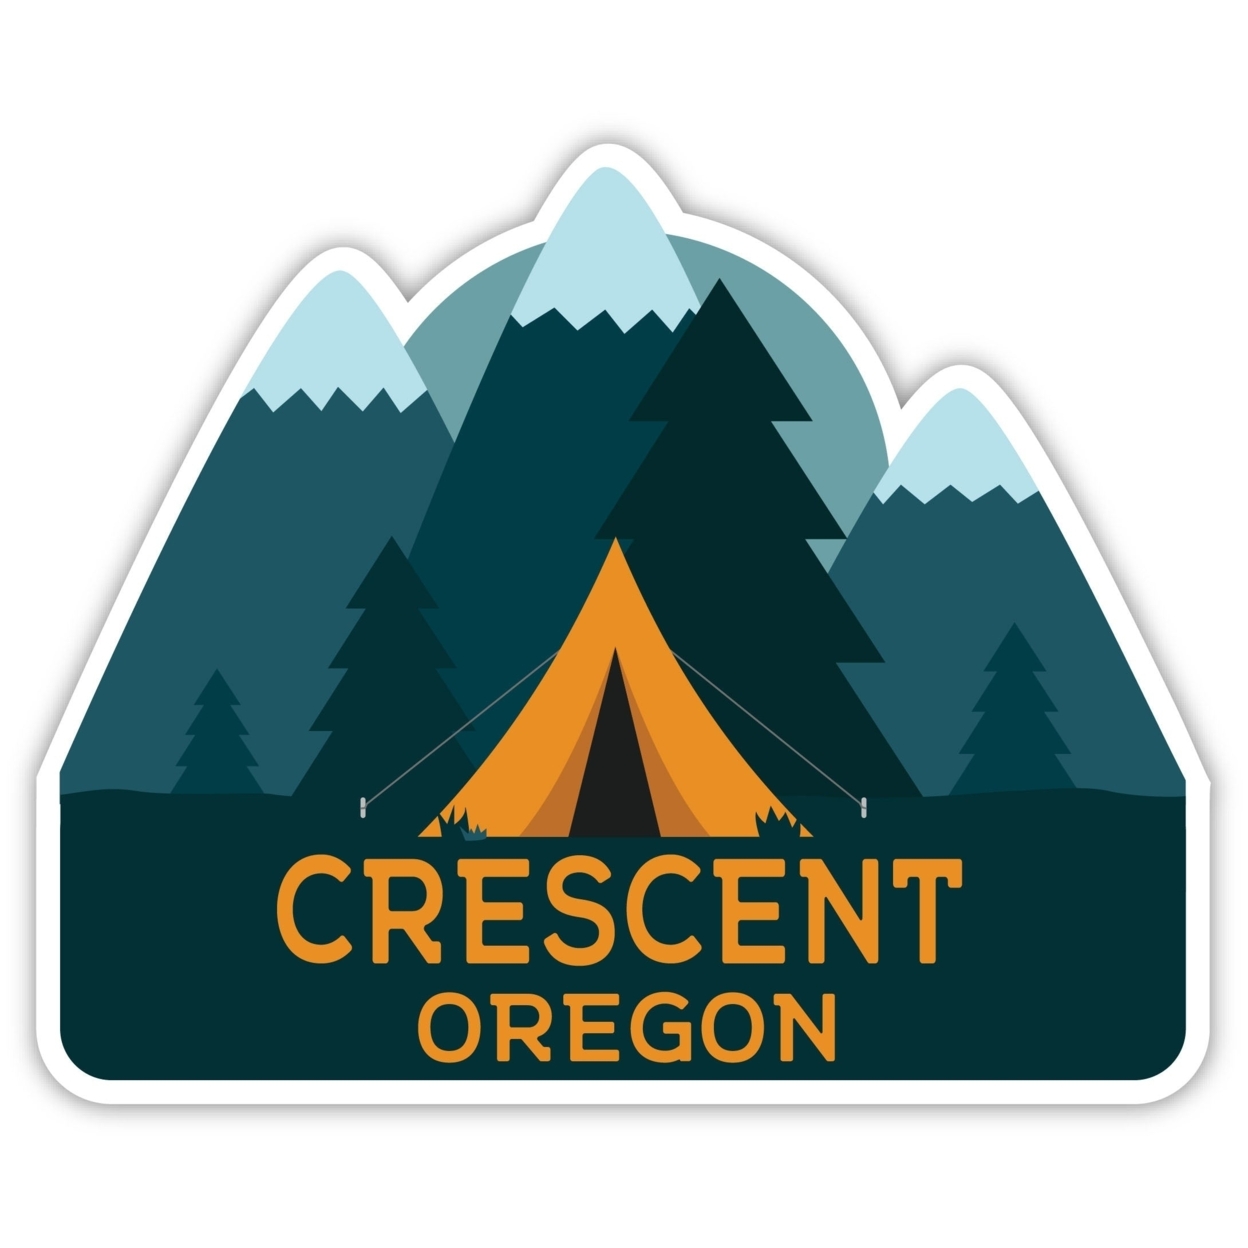 Crescent Oregon Souvenir Decorative Stickers (Choose Theme And Size) - Single Unit, 6-Inch, Tent